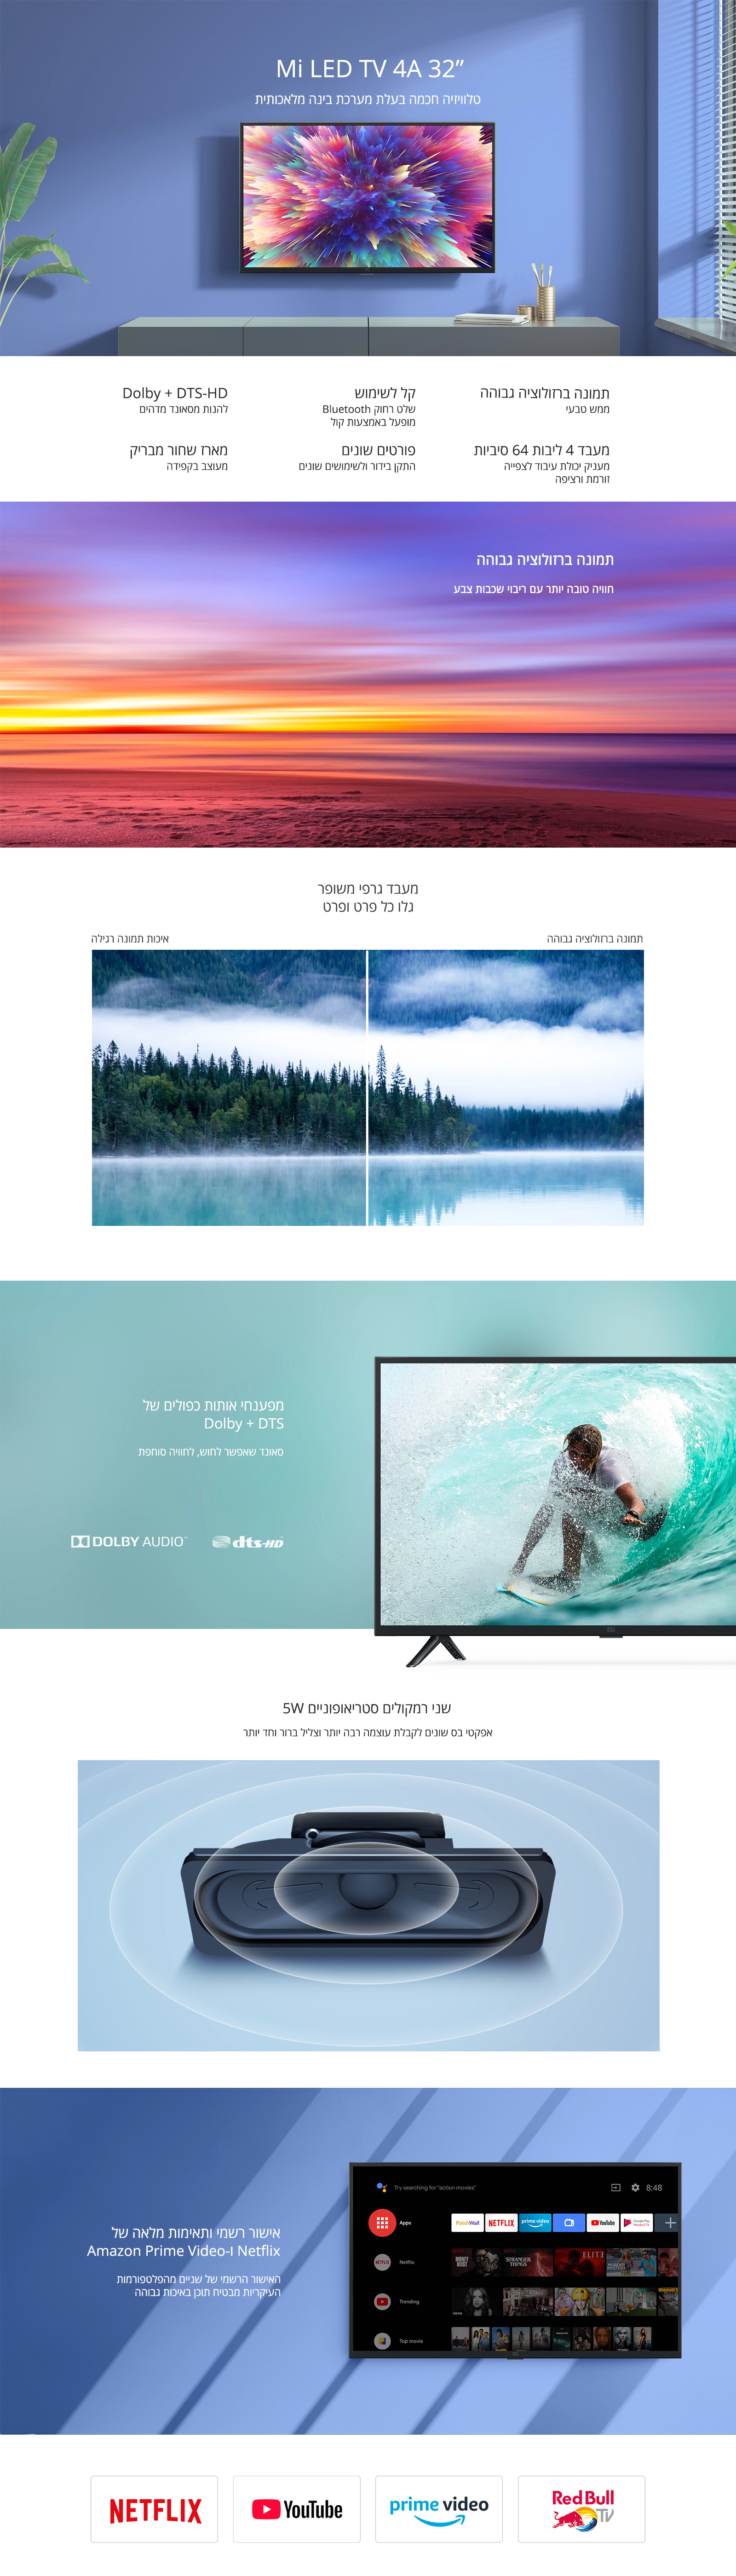 טלוויזיה חכמה 32" שיאומי Xiaomi דגם L32M5-5ASP